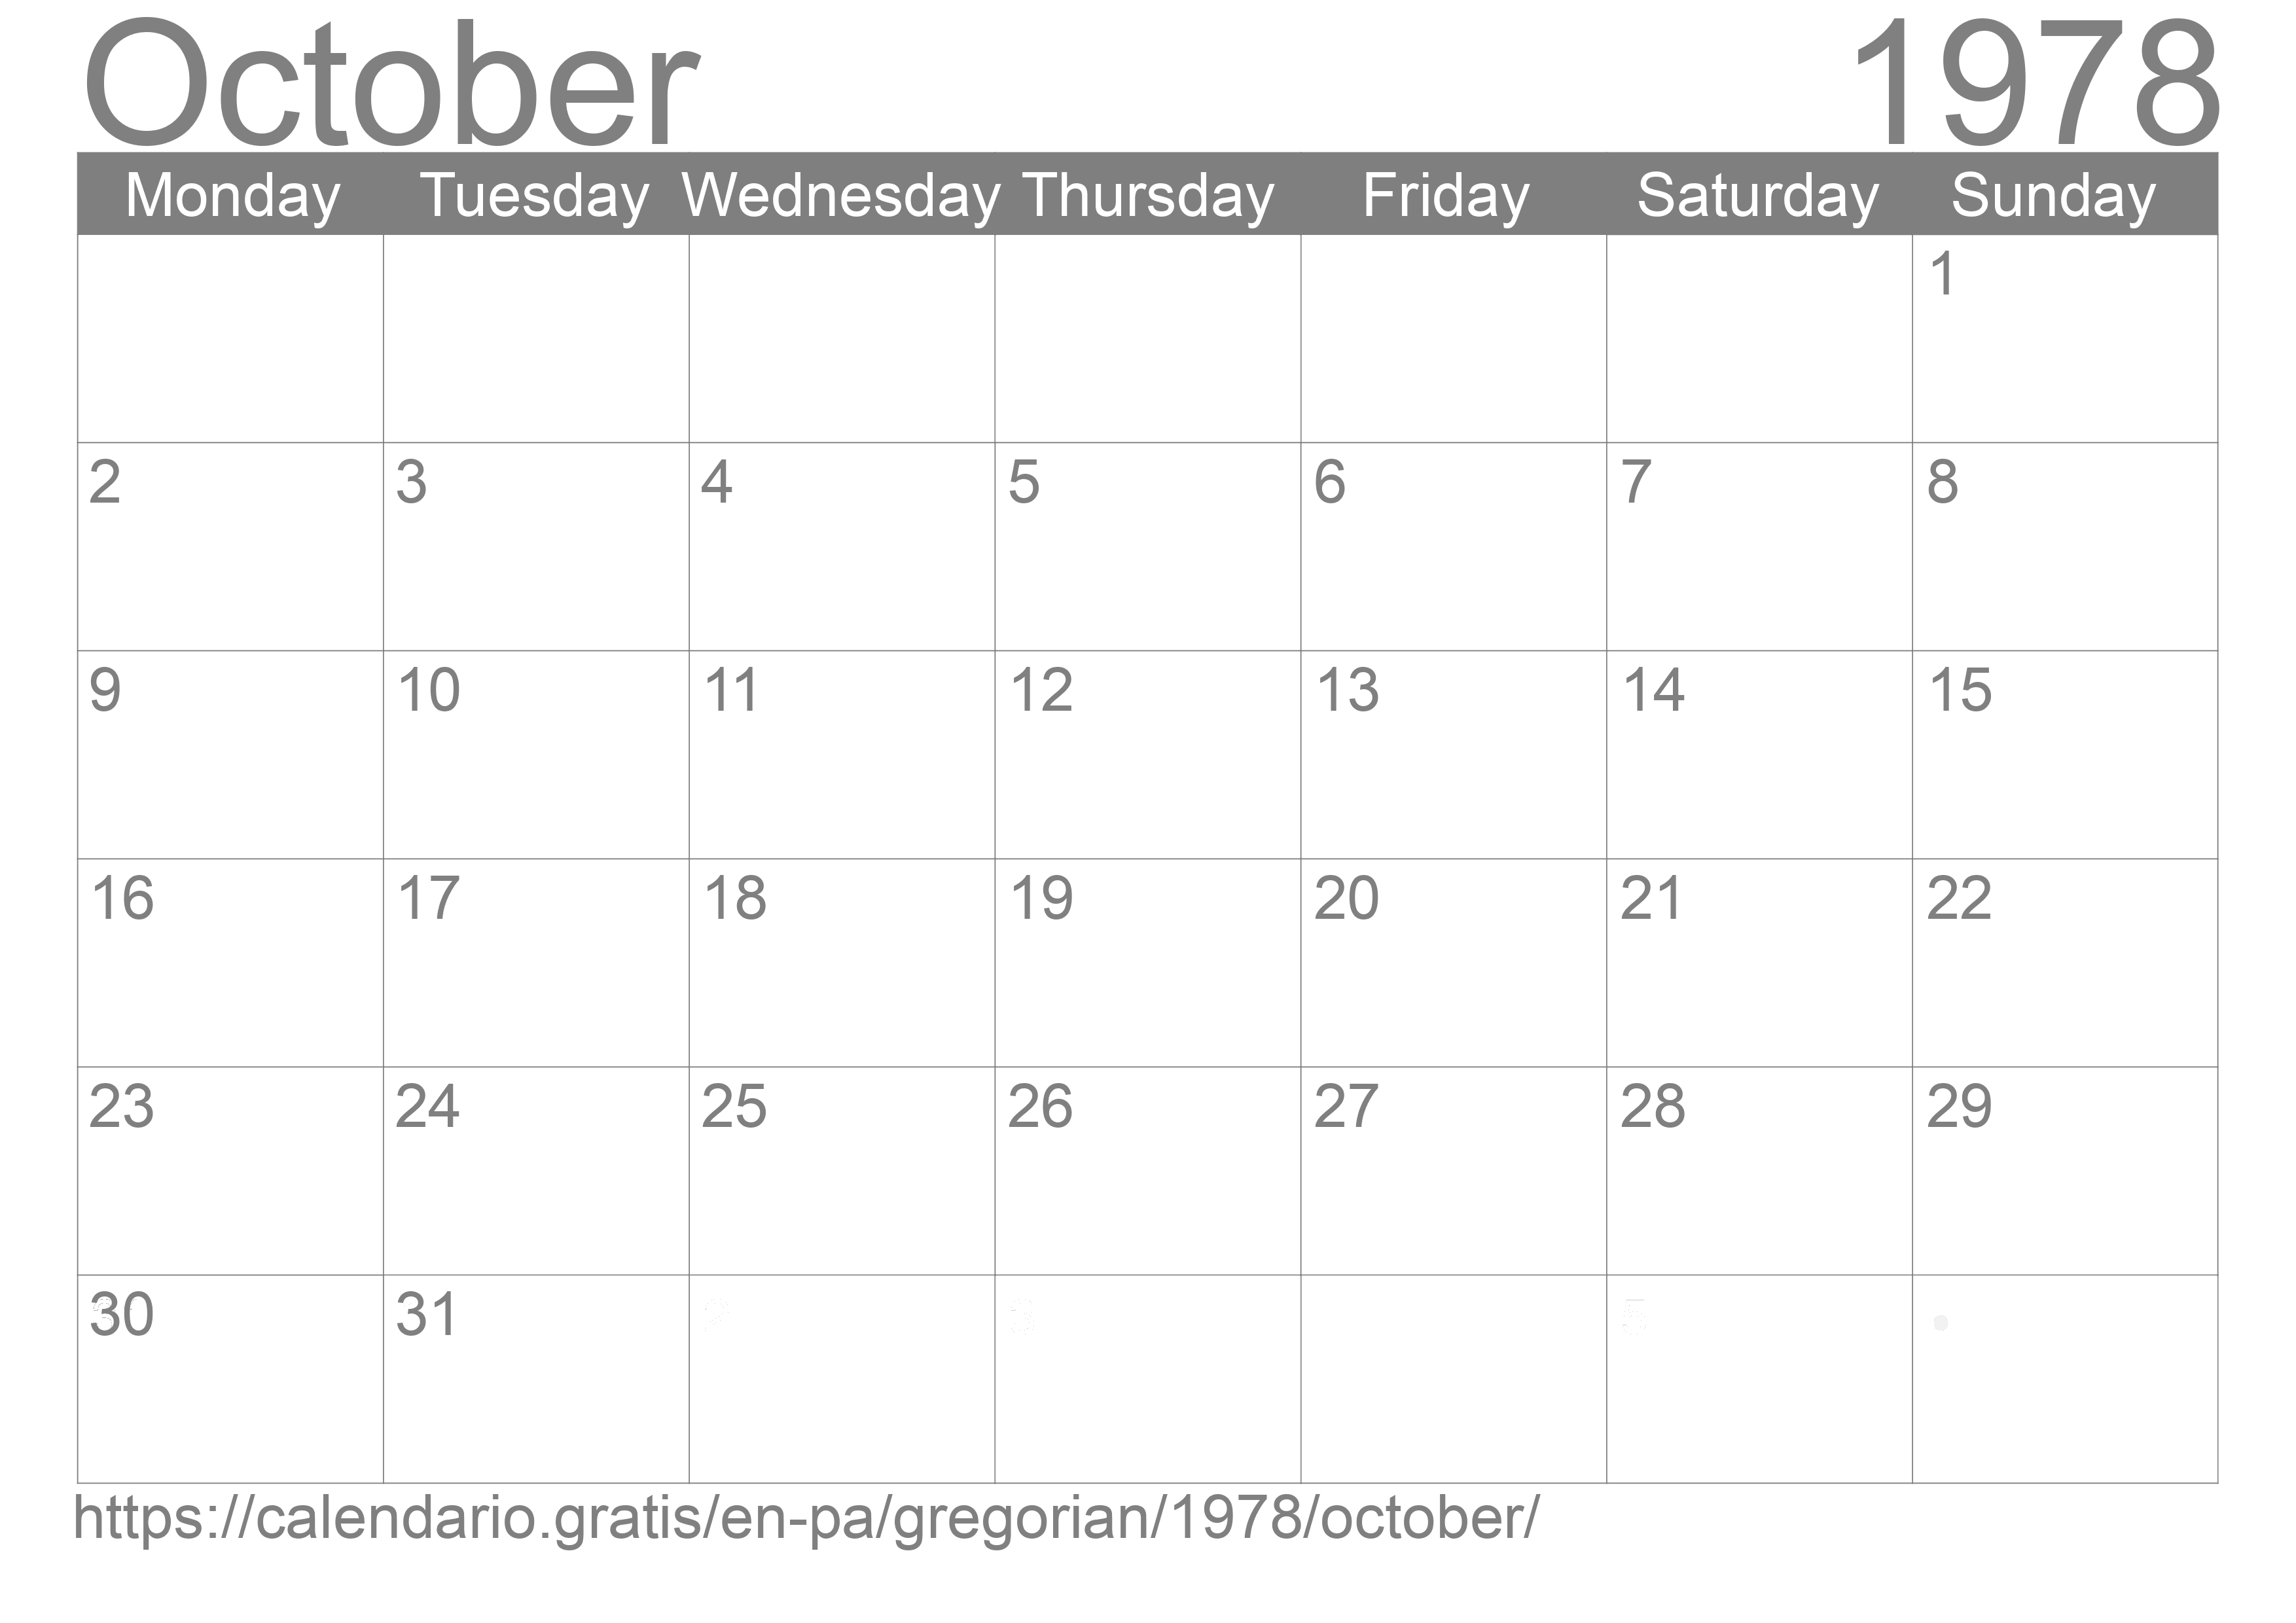 Calendar October 1978 to print